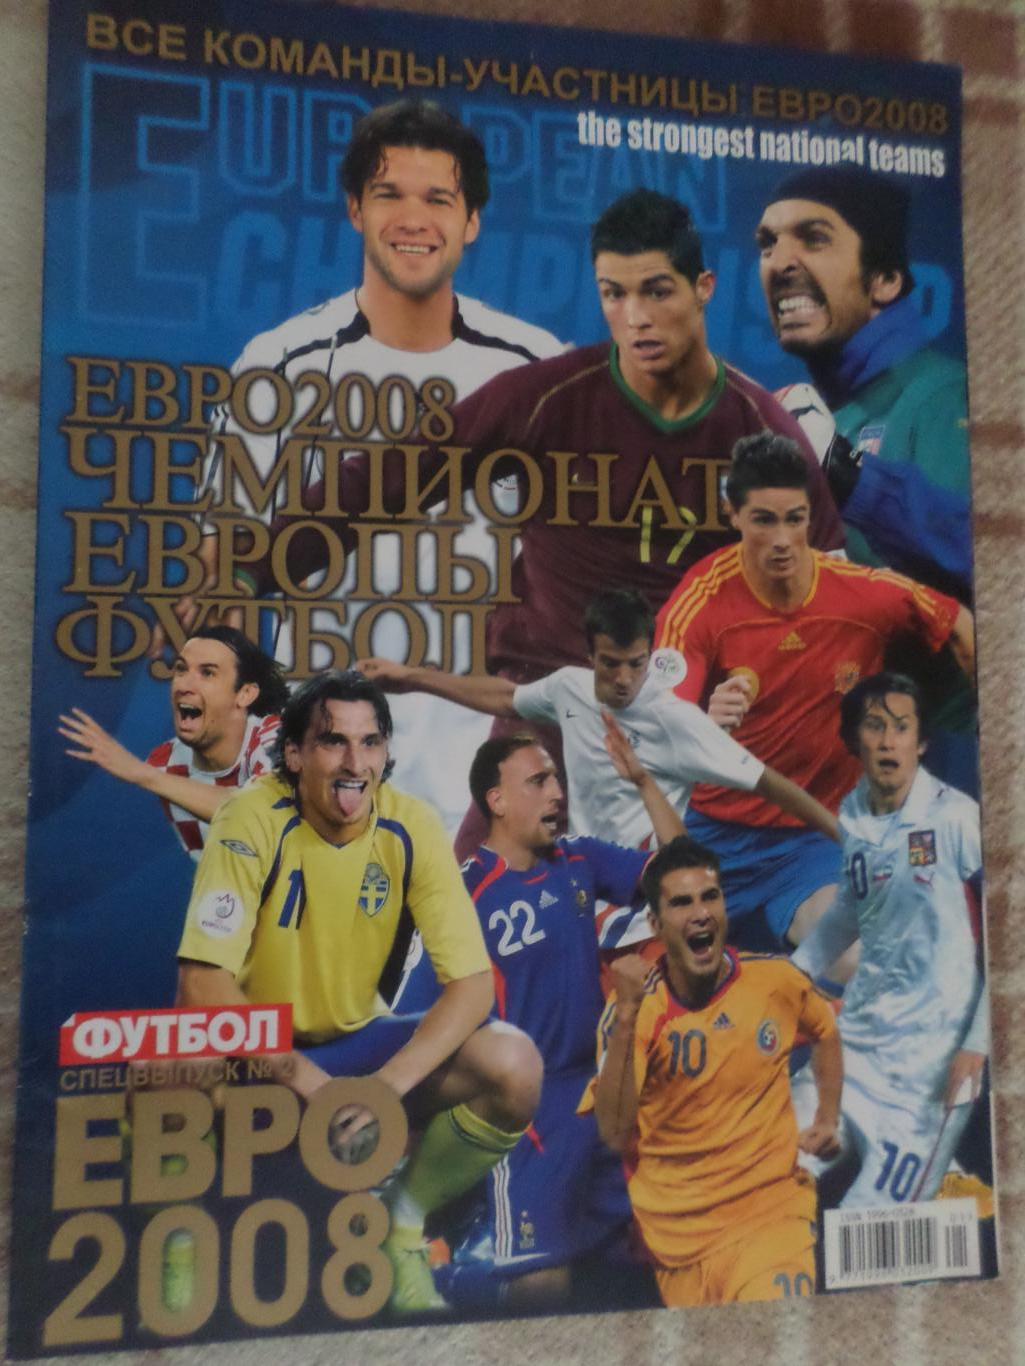 Еженедельник Футбол (Киев) спецвыпуск ЕВРО 2008 Чемпионат Европы по футболу